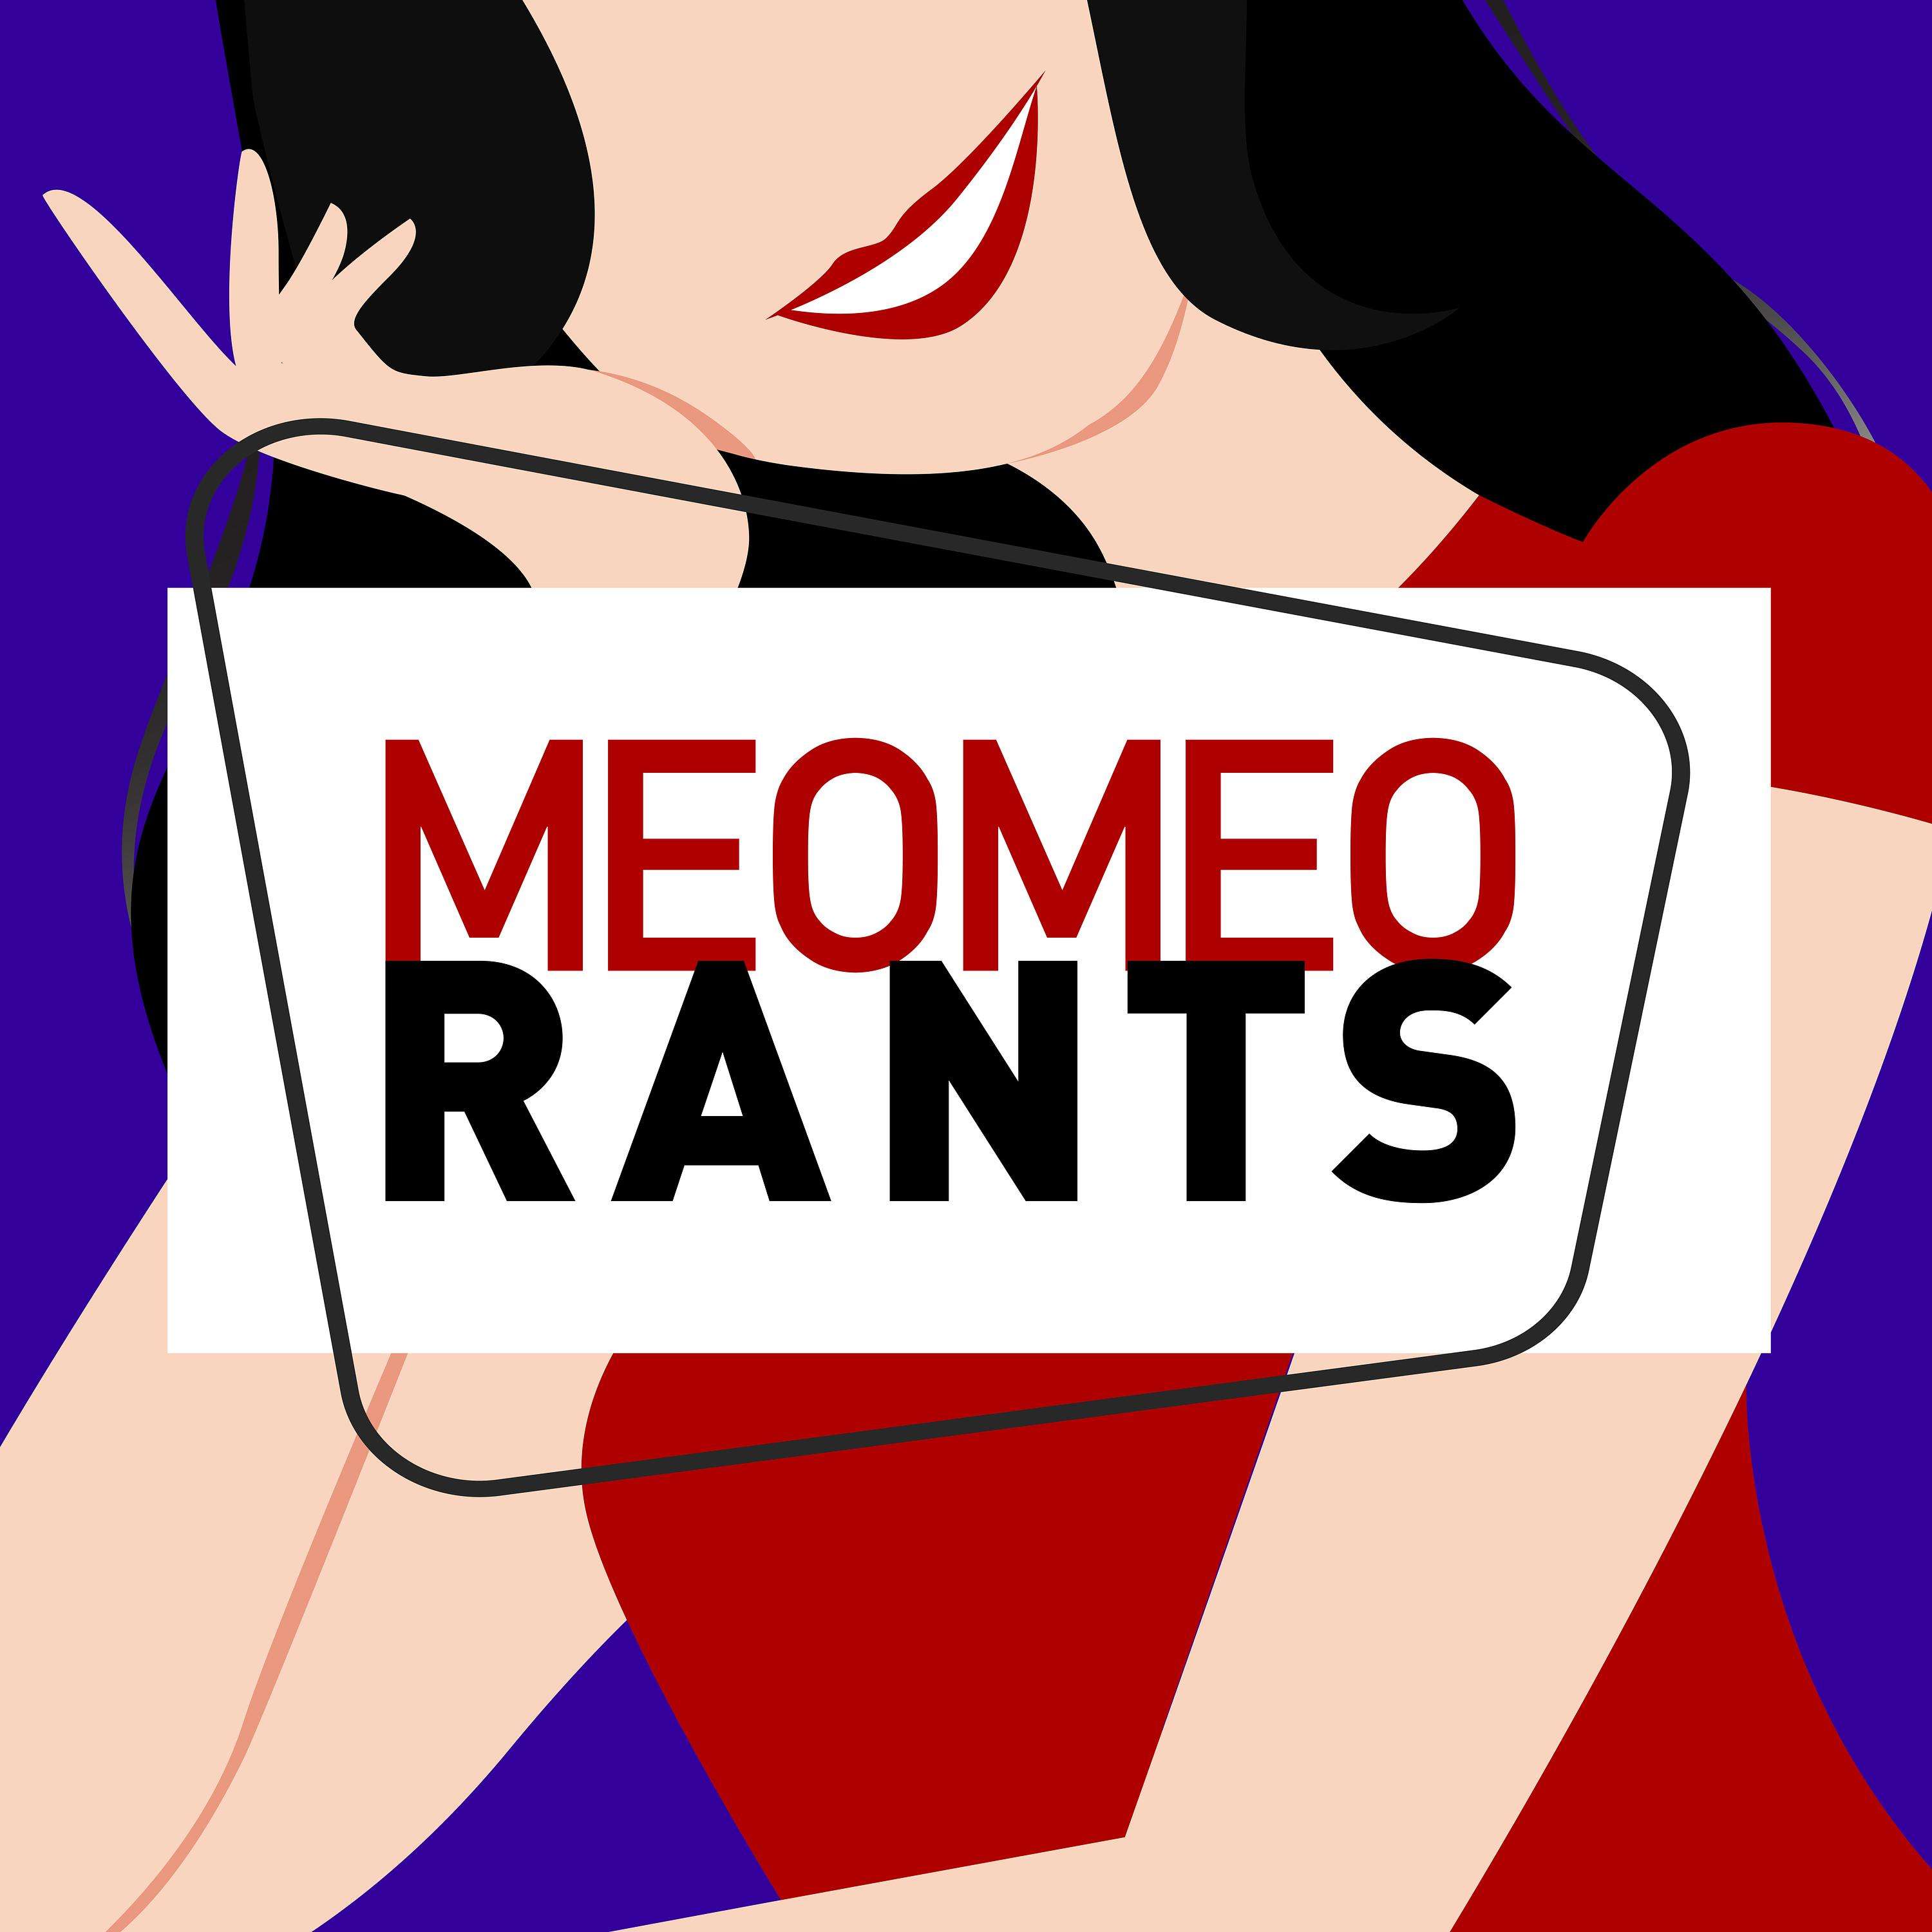 meomeorants